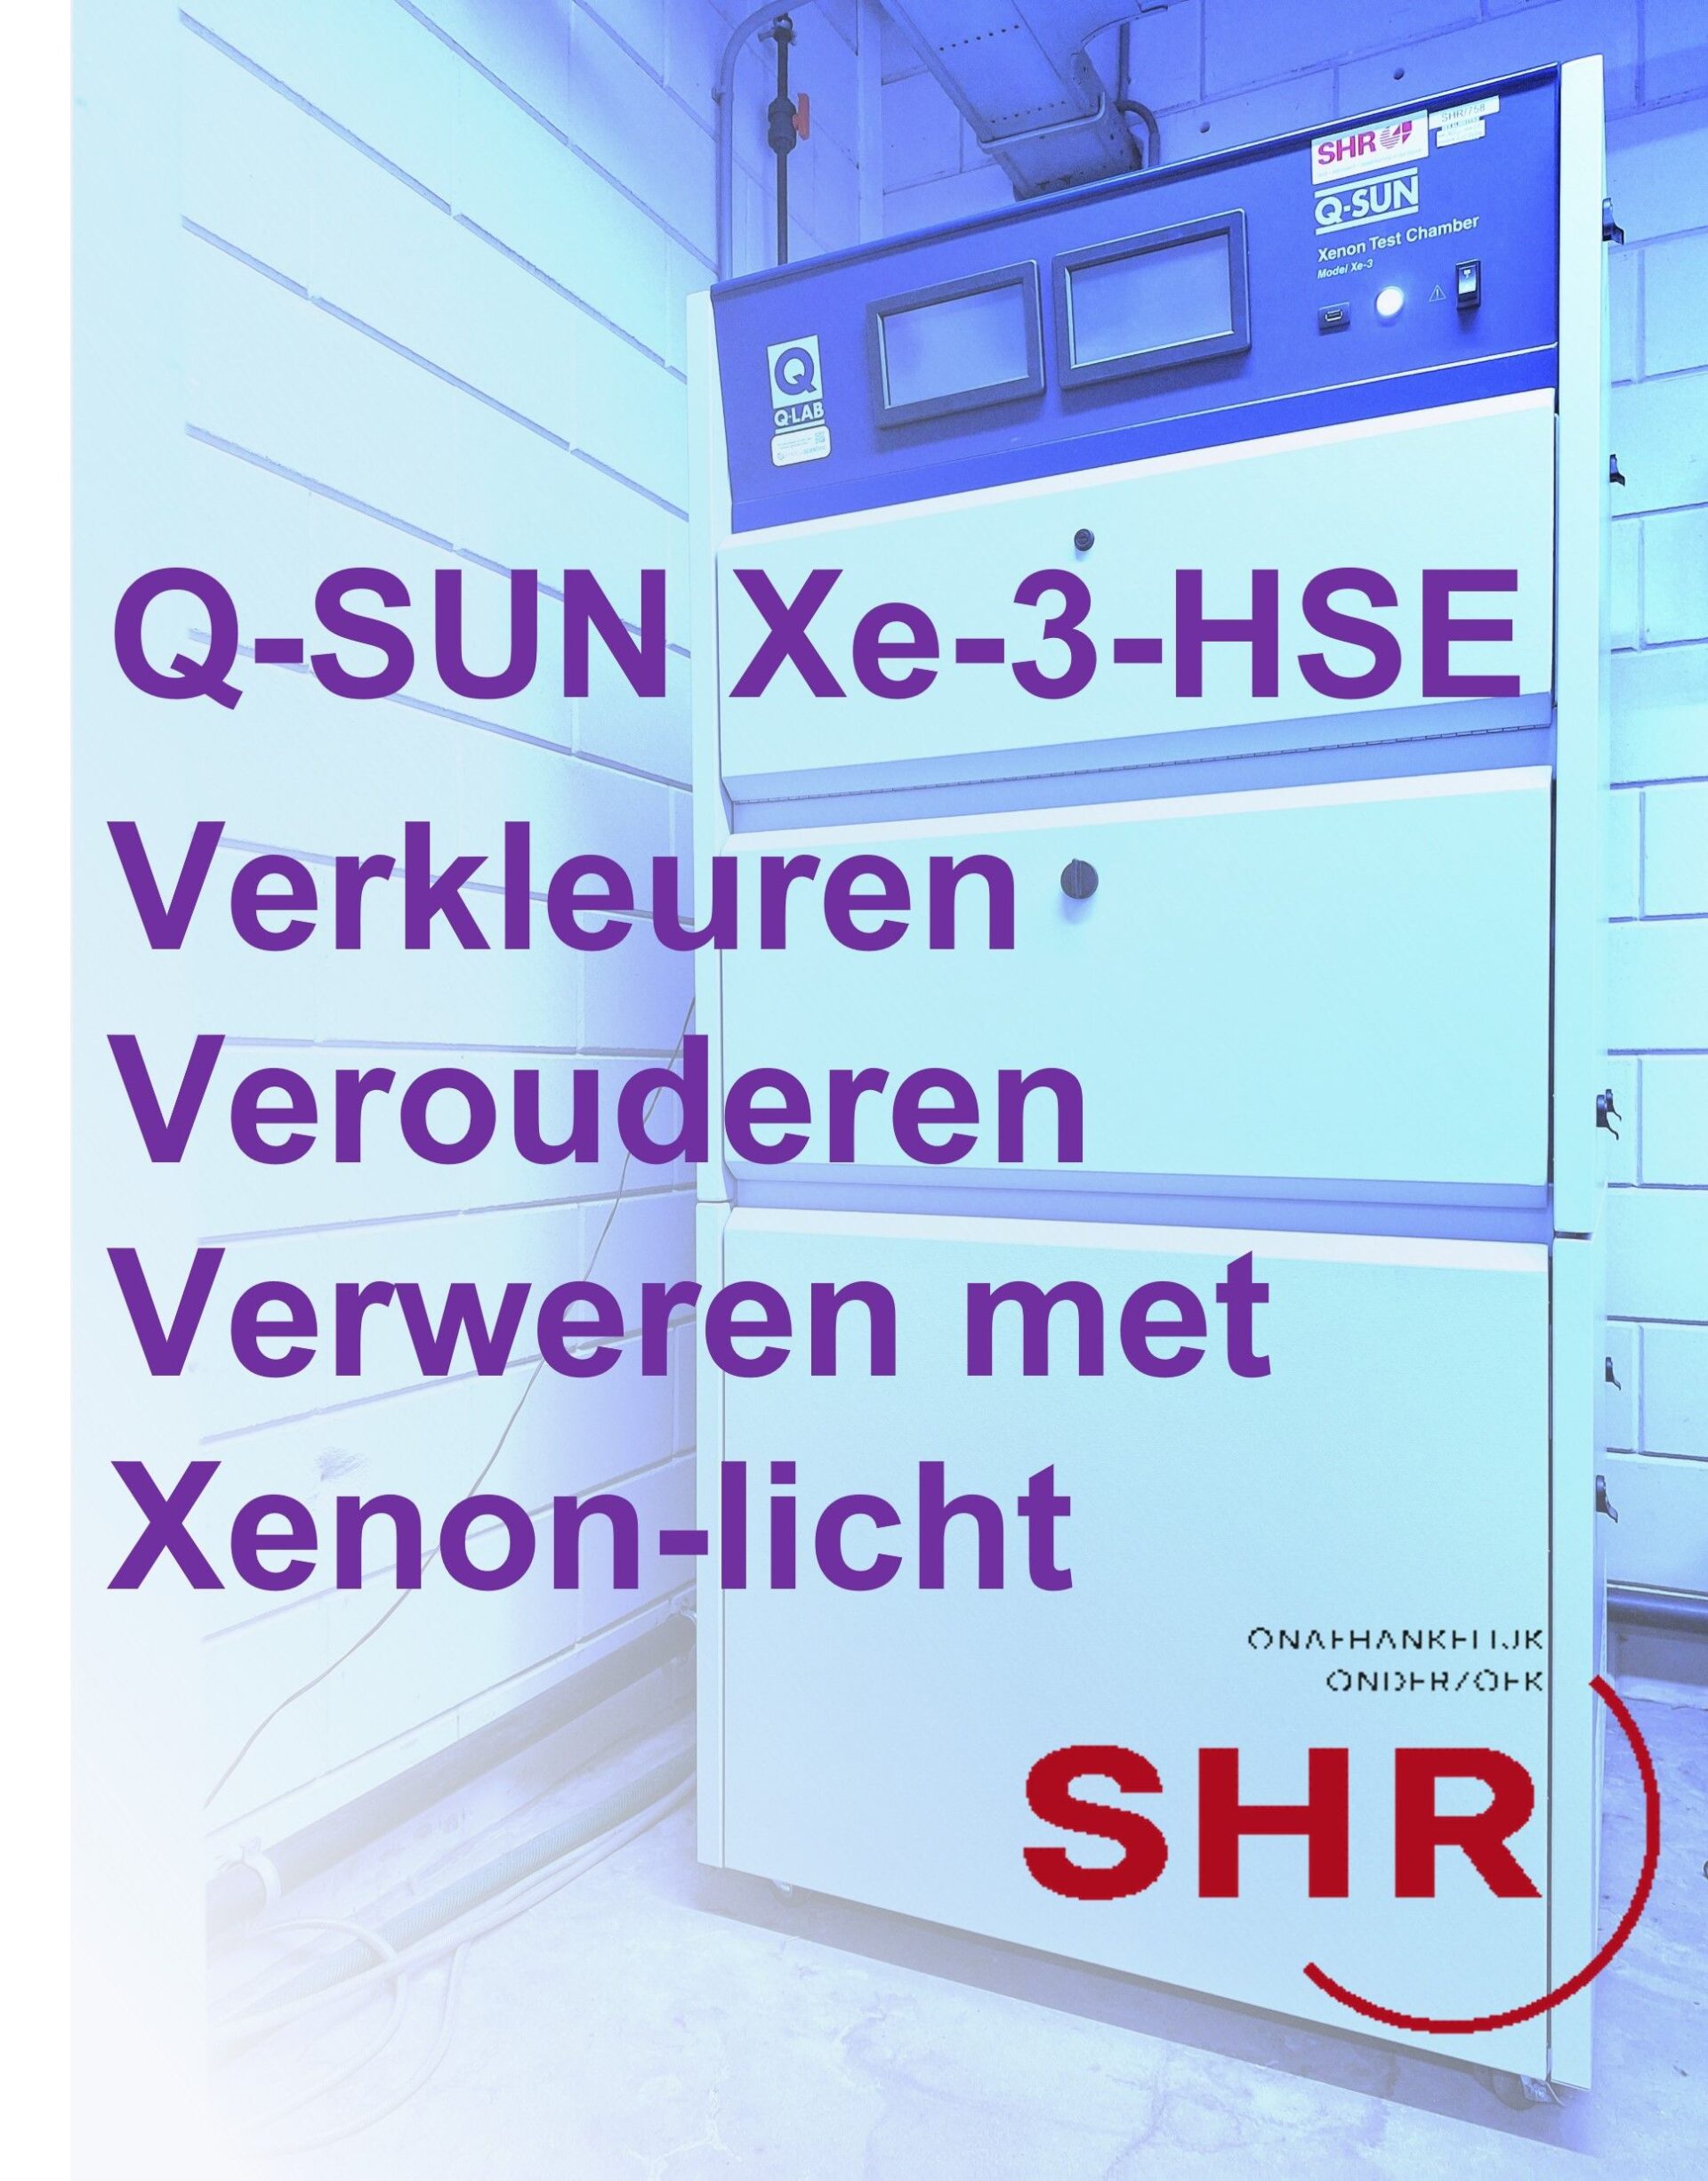 q-sun-xe-3-hse-nieuwsitem